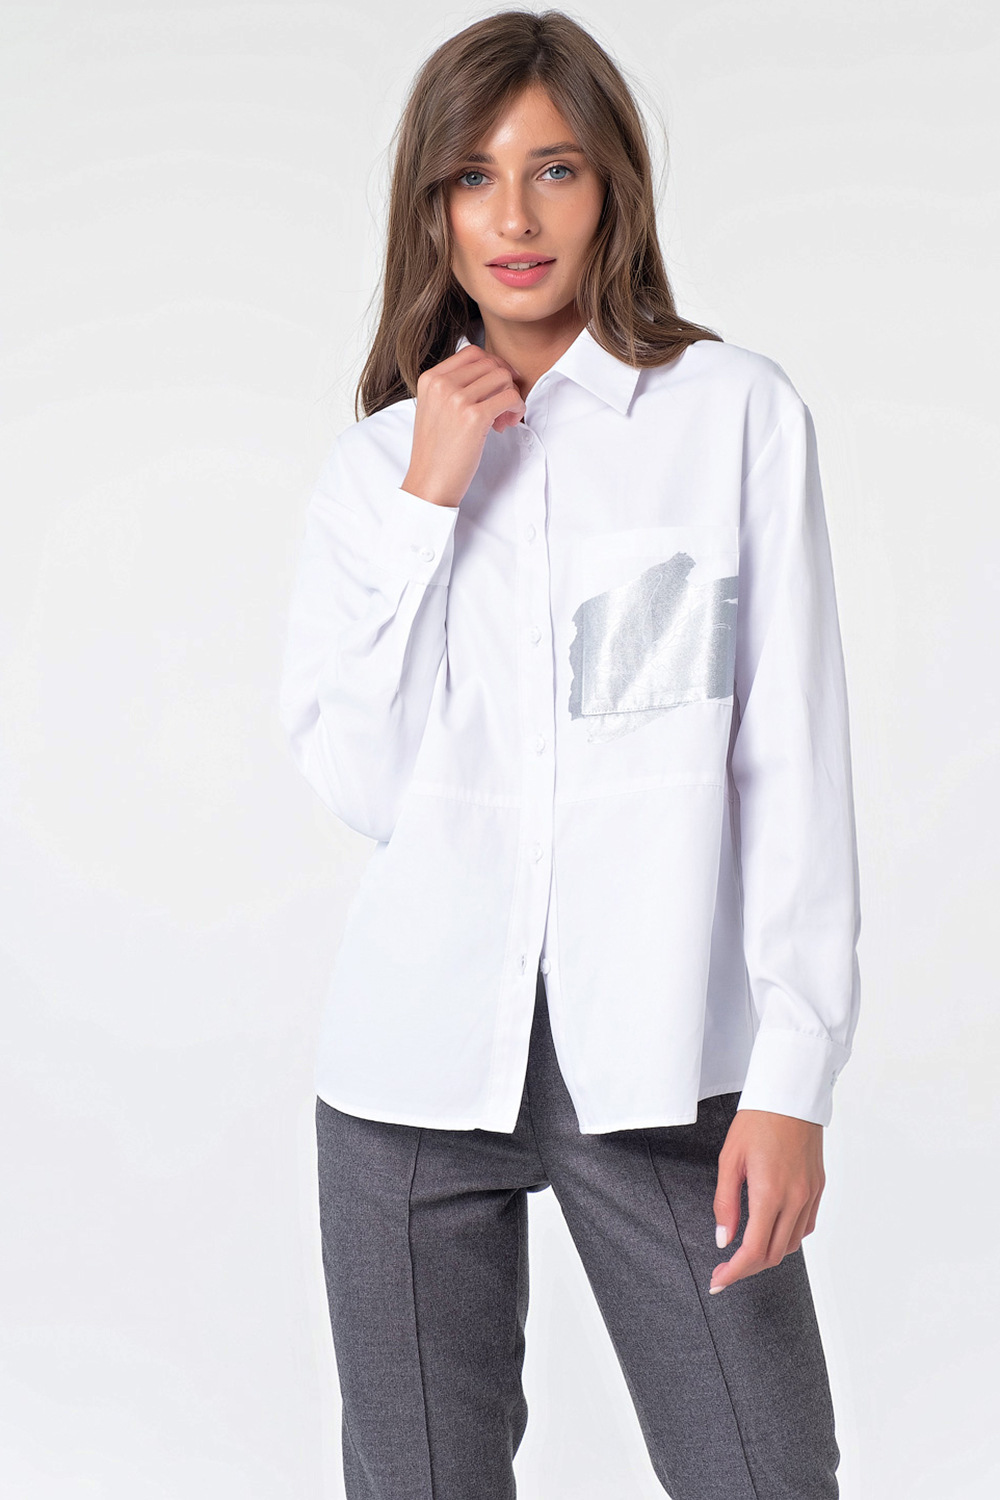 Эффектная женская рубашка FL-2125-02 цена-4416 р. в интернет магазинеbeauti-full.ru